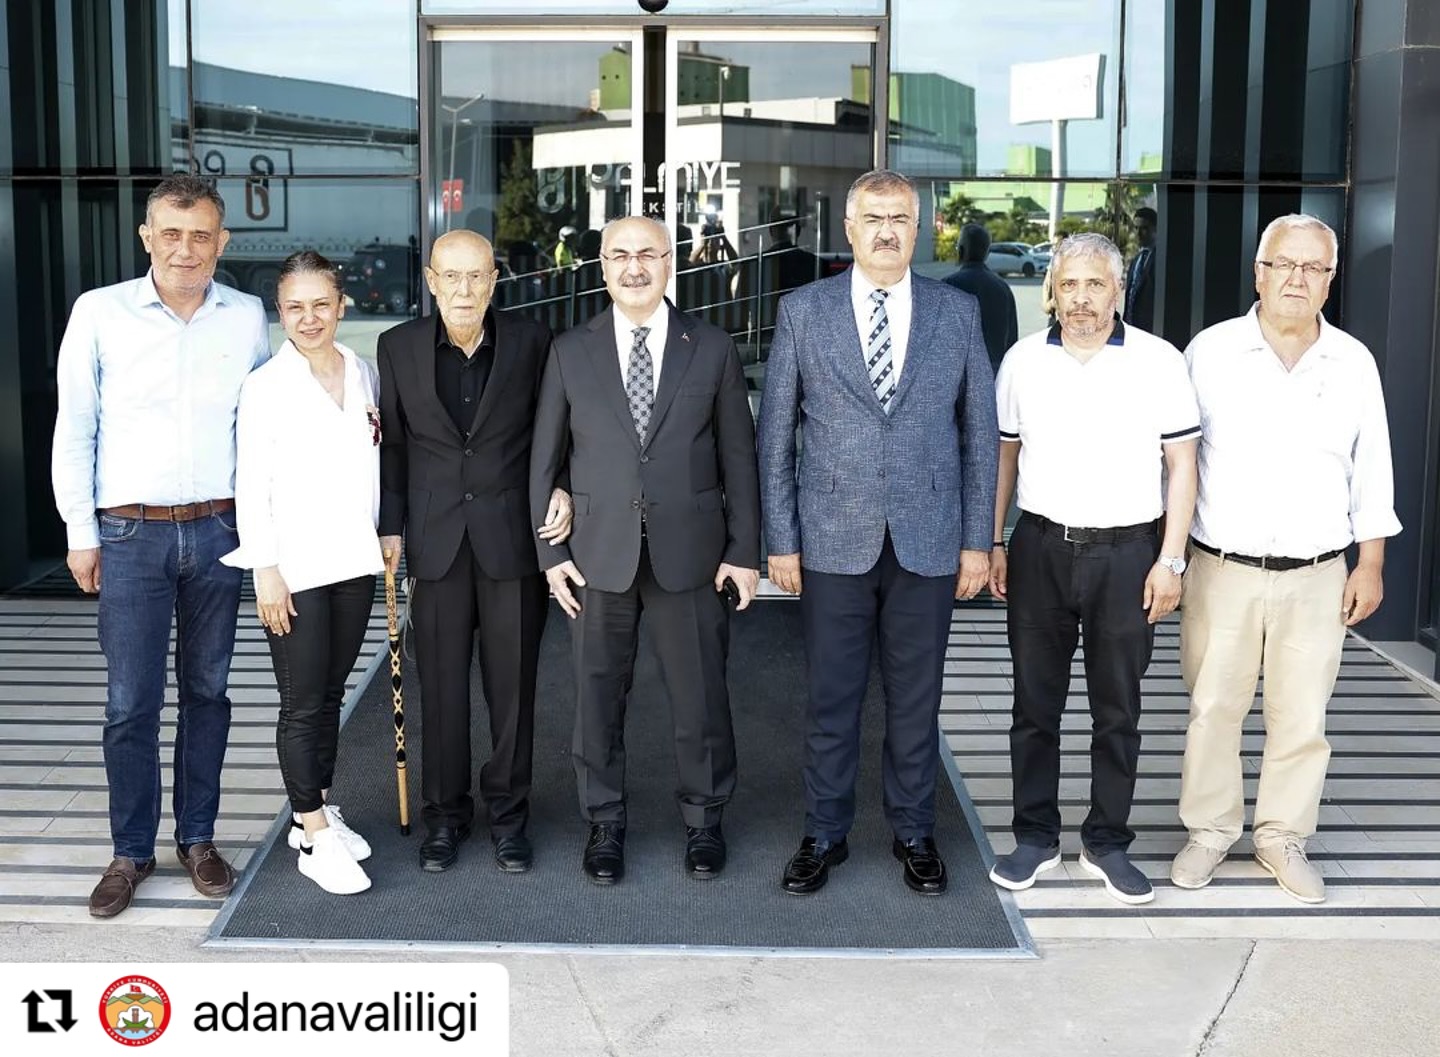 Adana Valisi Yavuz Selim Köşger İş Dünyasıyla Buluştu